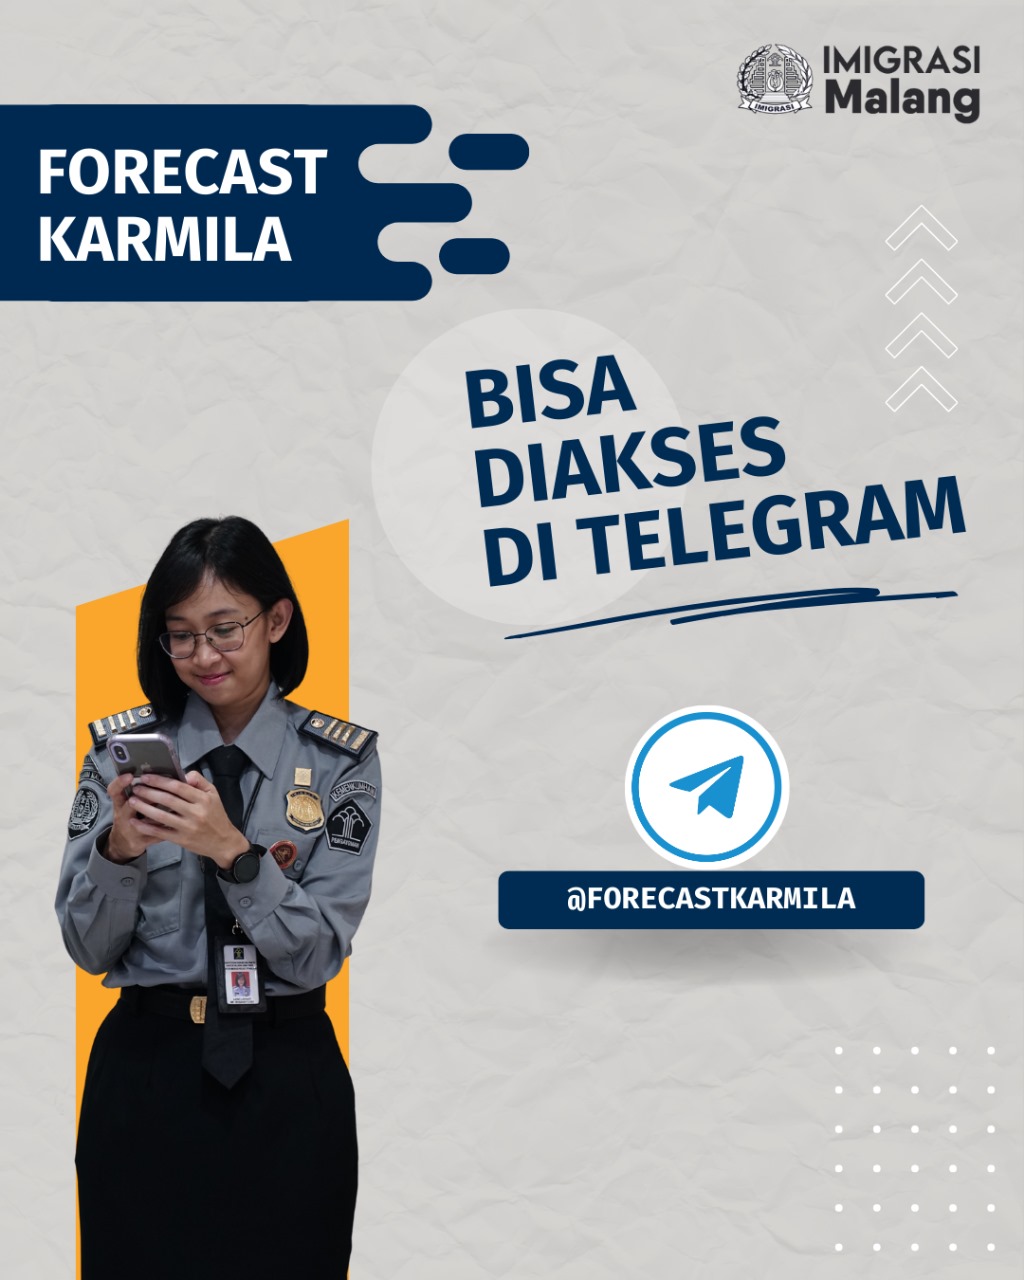 Layanan Forecast Karmila Sekarang Bisa Diakses di Telegram